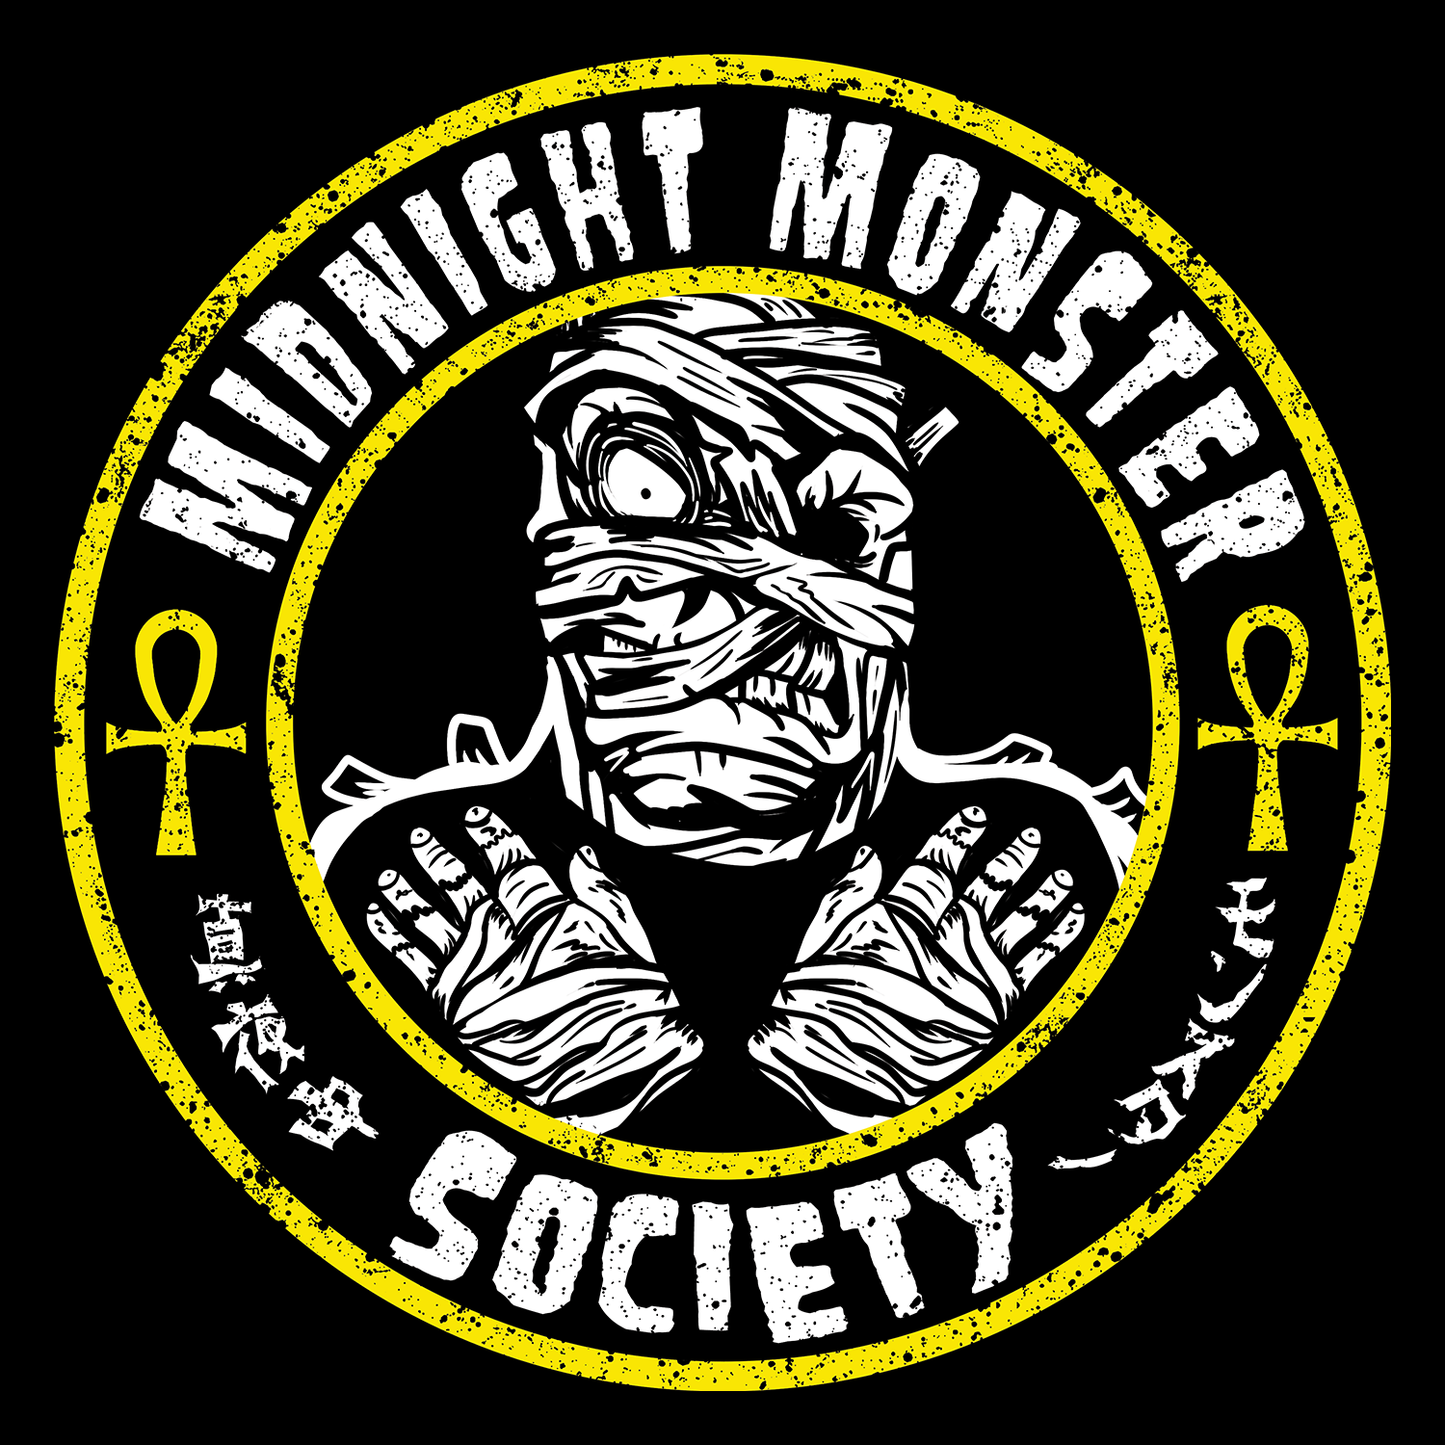 Midnight Monster Society, Mummy Fiend Crop Top